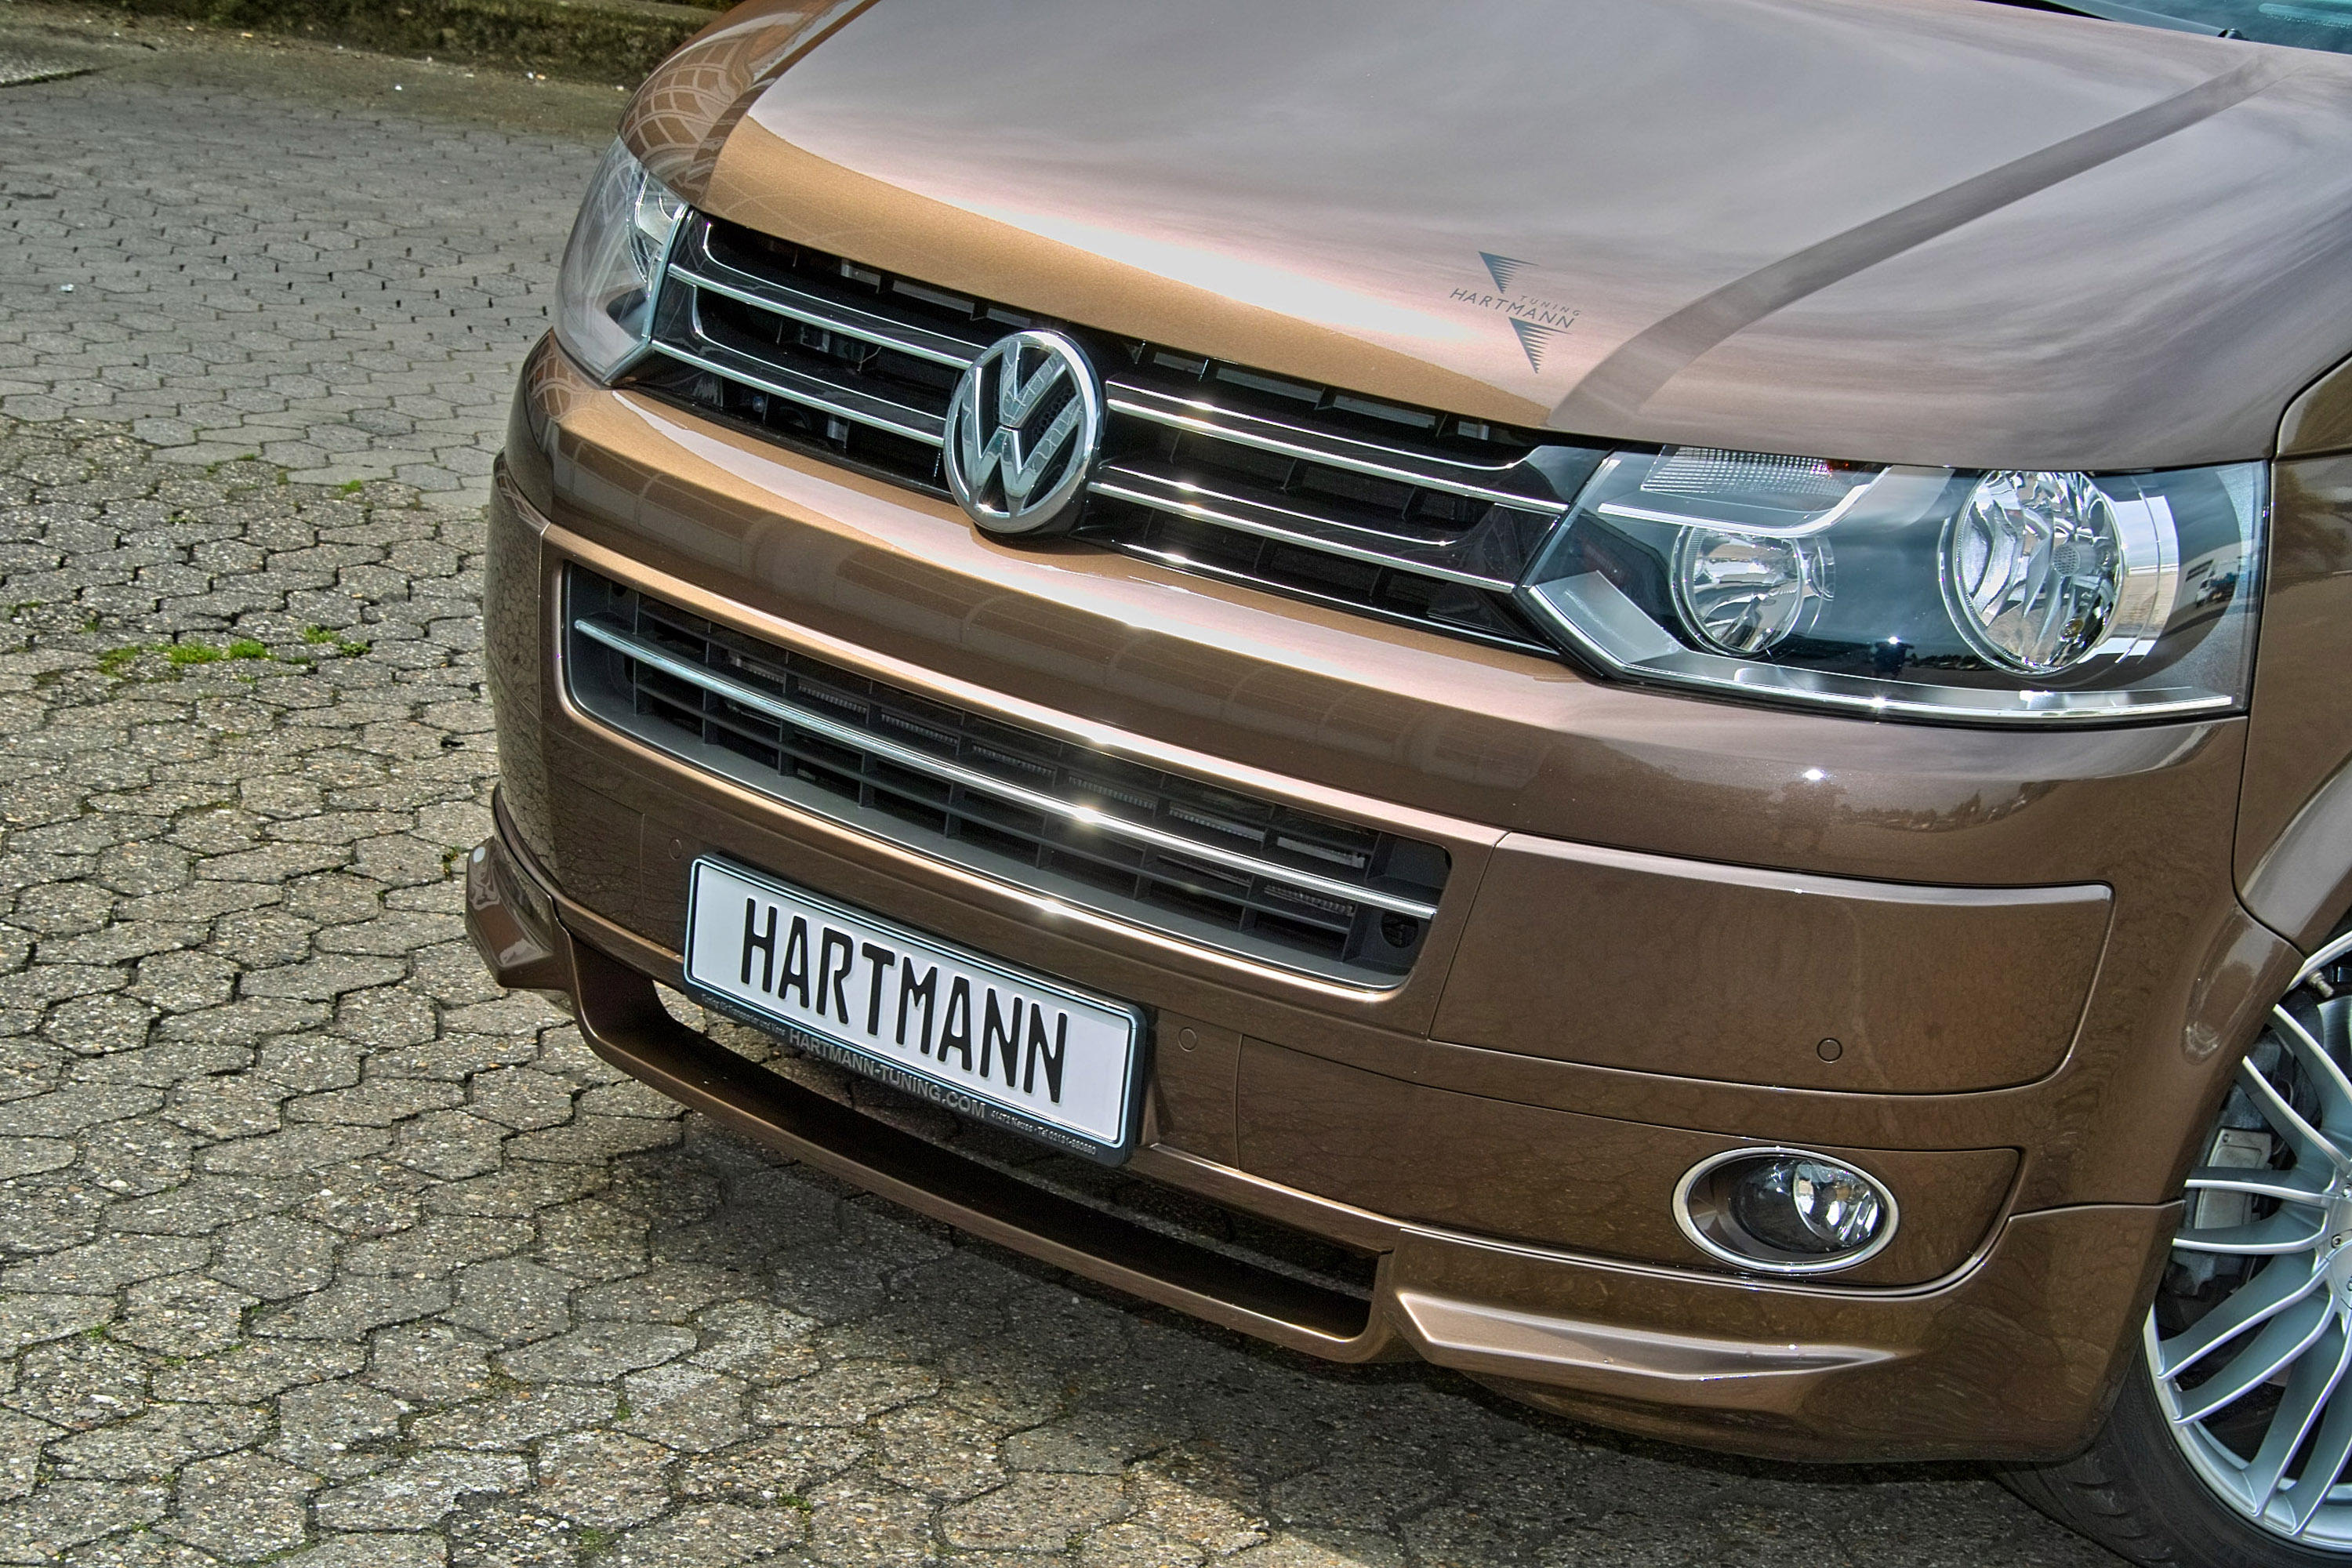 Hartmann Vansports Volkswagen T5 Prime